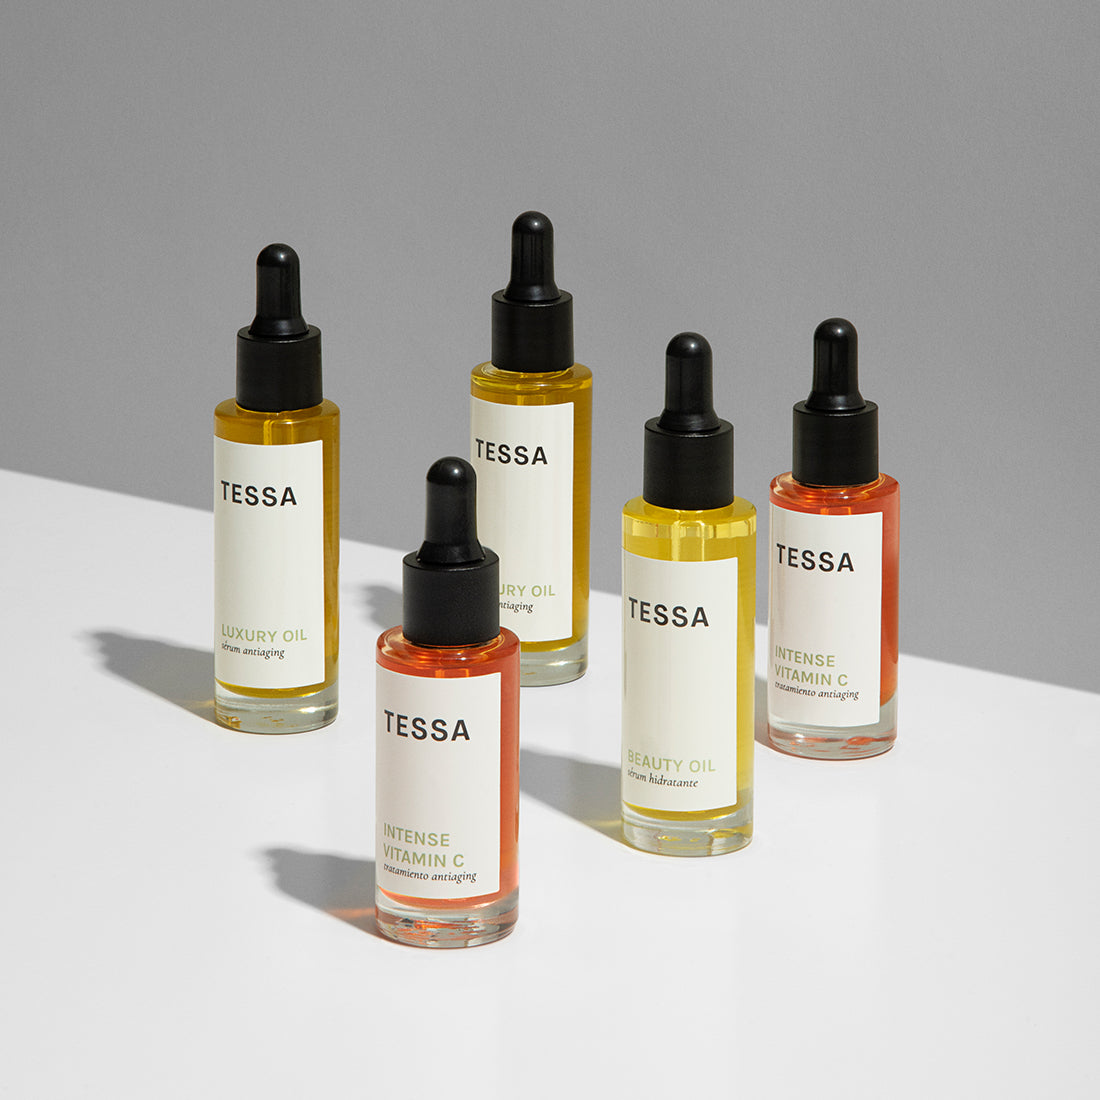 Luxury Oil, linea de cuidado facial marca TESSA